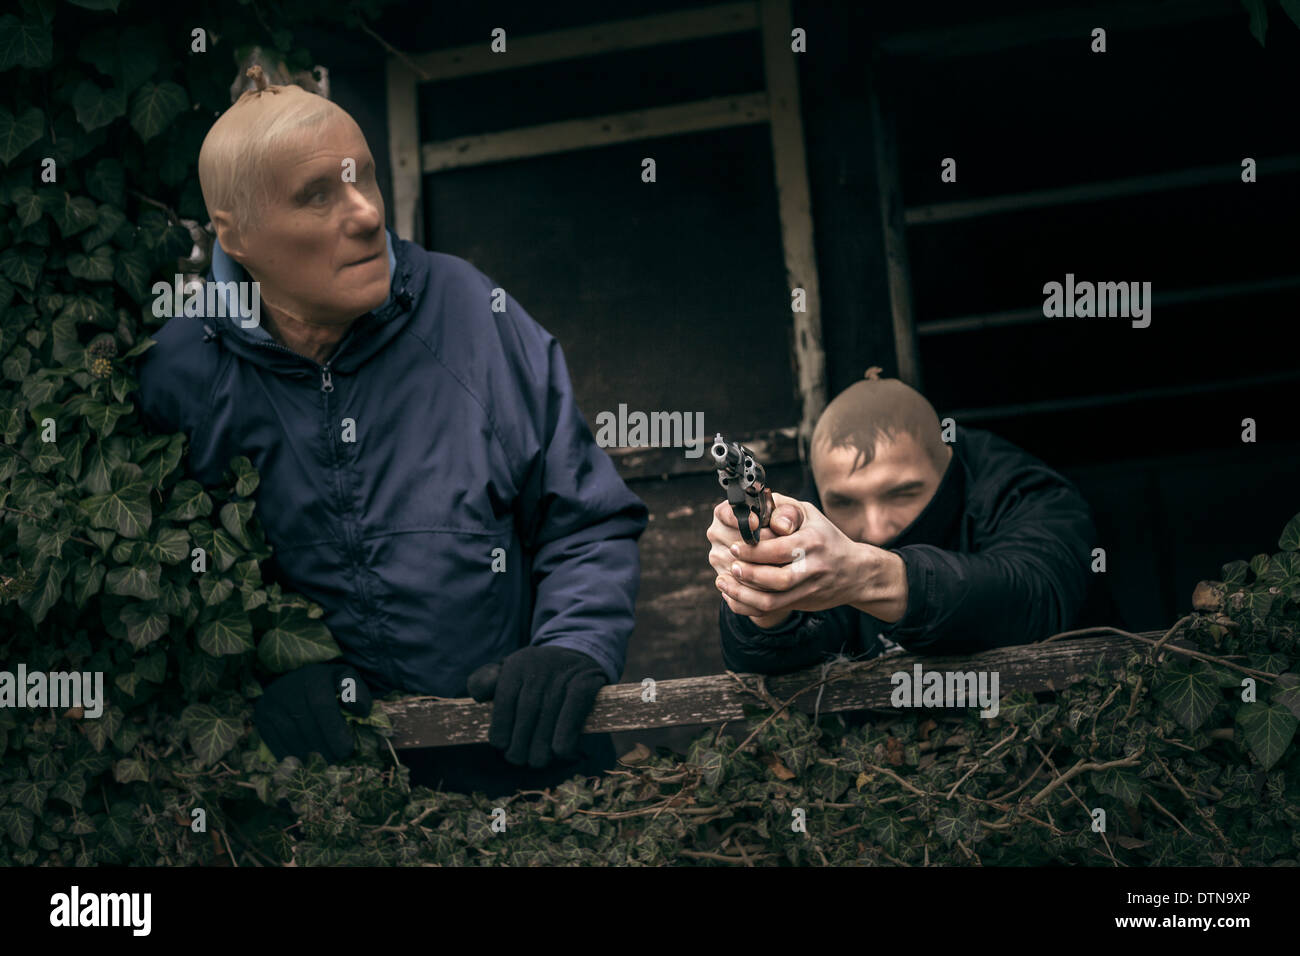 Zwei maskierte bewaffnete Männer verstecken auf bewachsenen Veranda der alten Kabine. Stockfoto